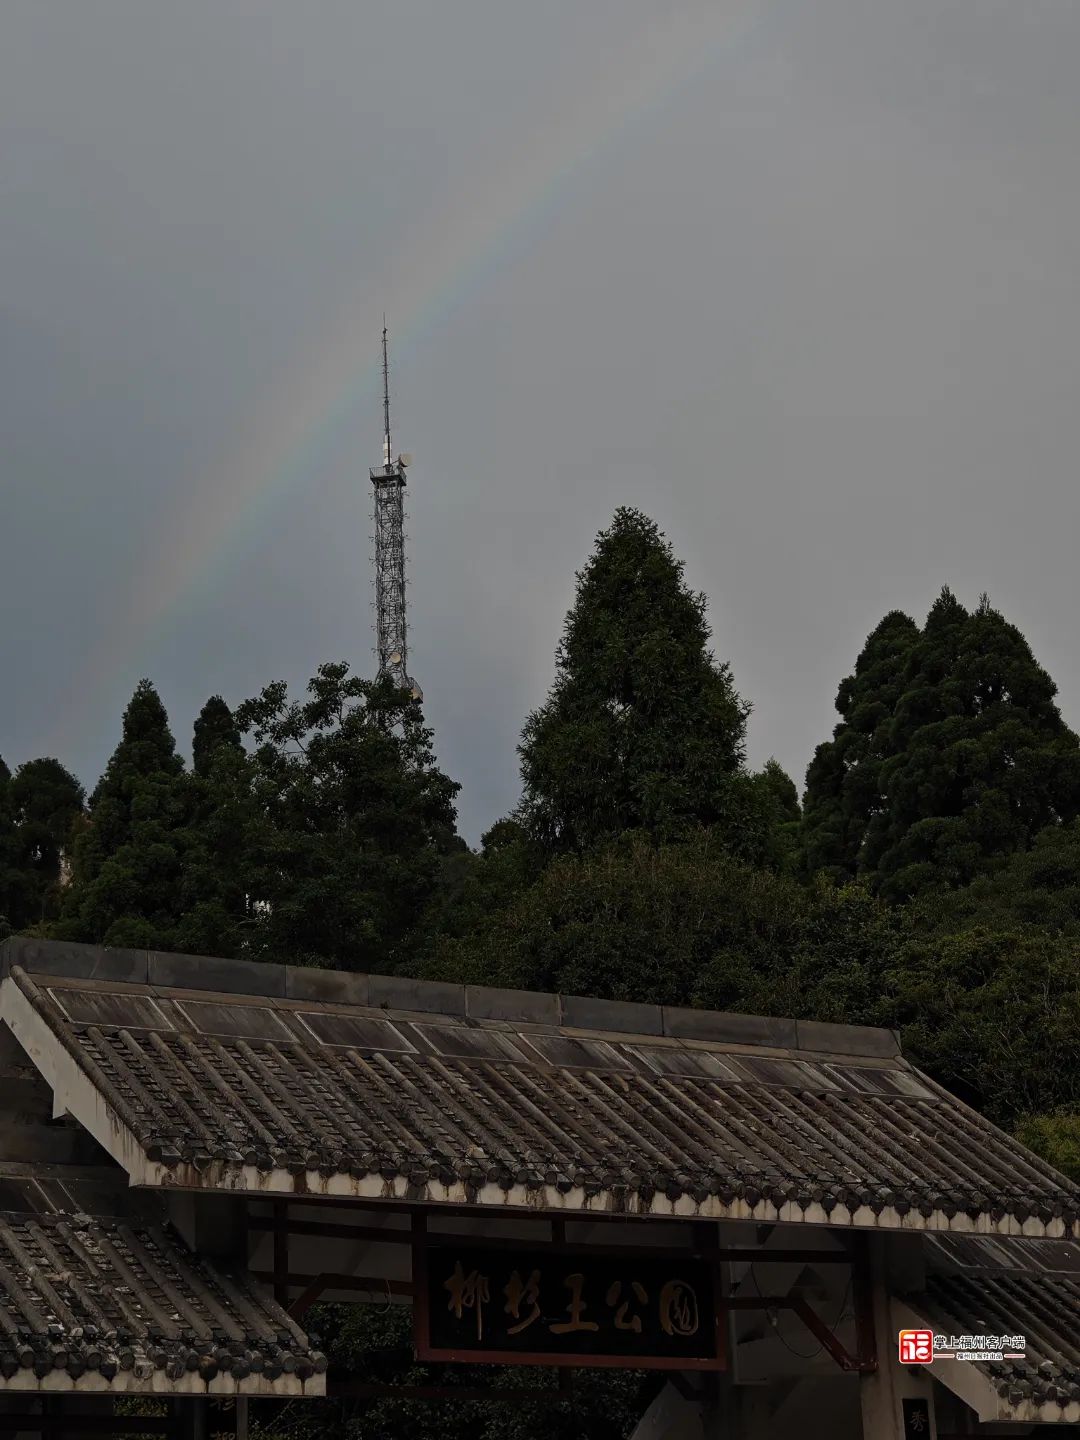 福州天空惊现超大彩虹